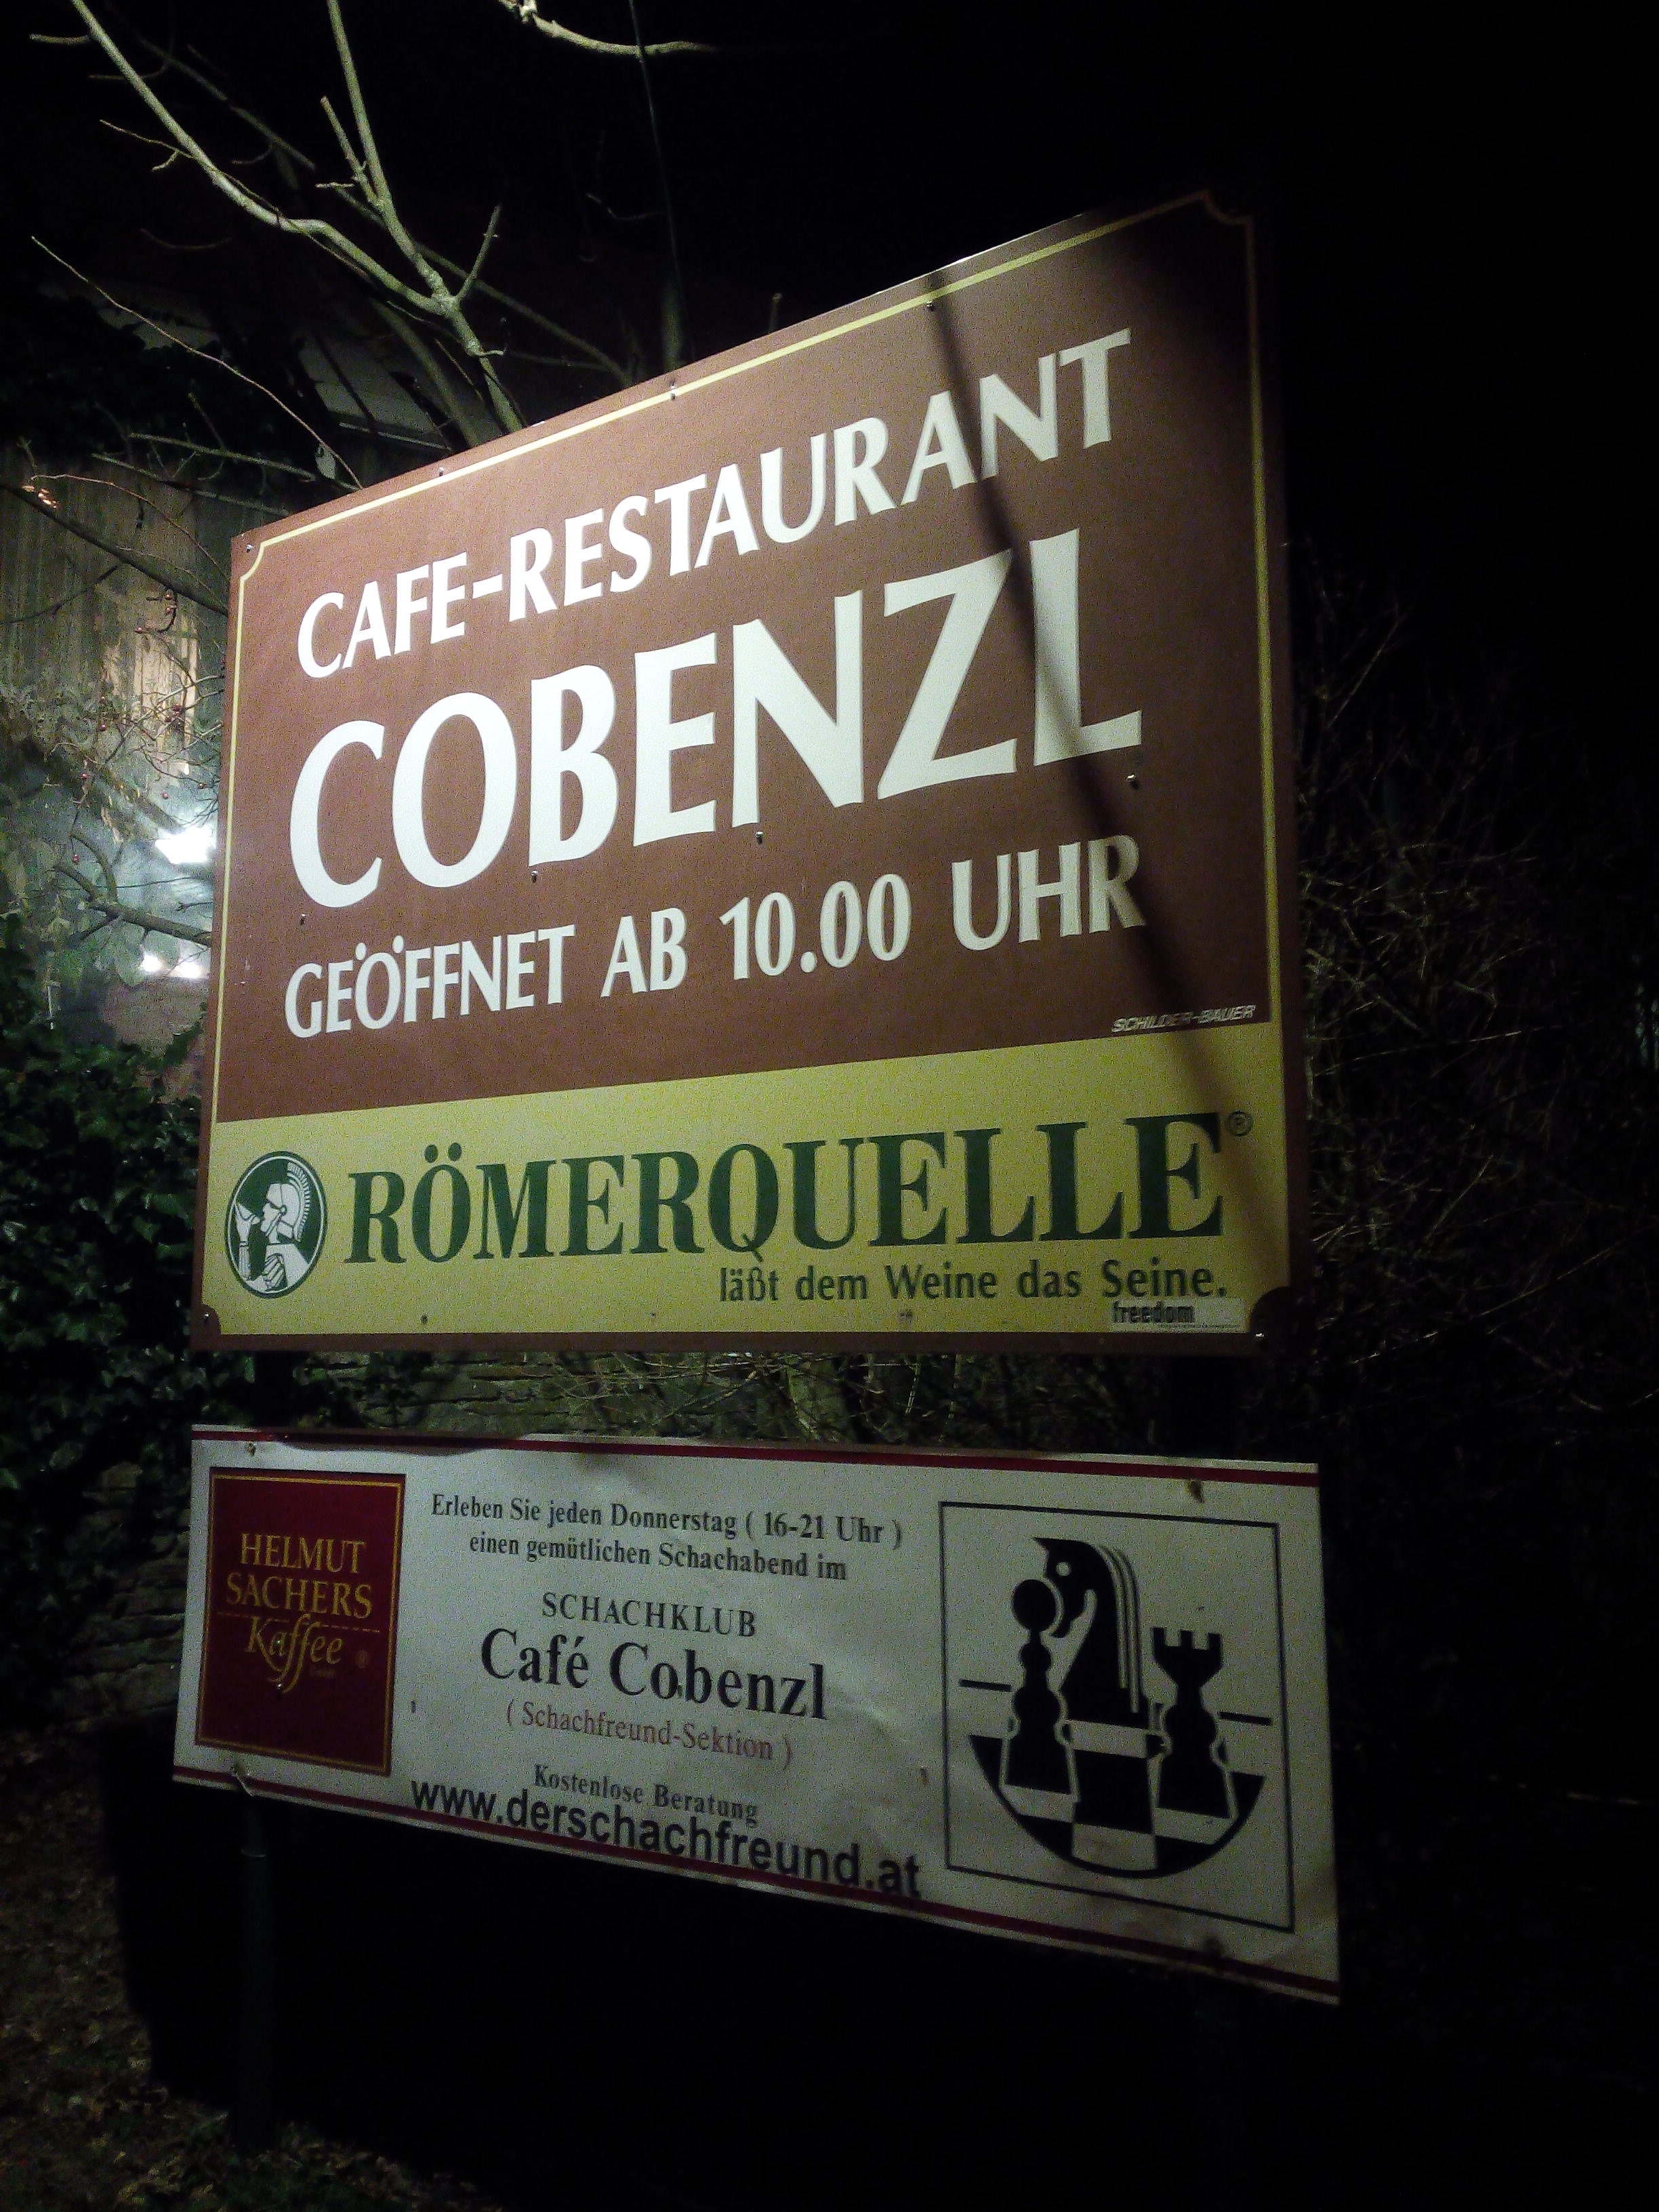 Cafe-Restaurant Cobenzl